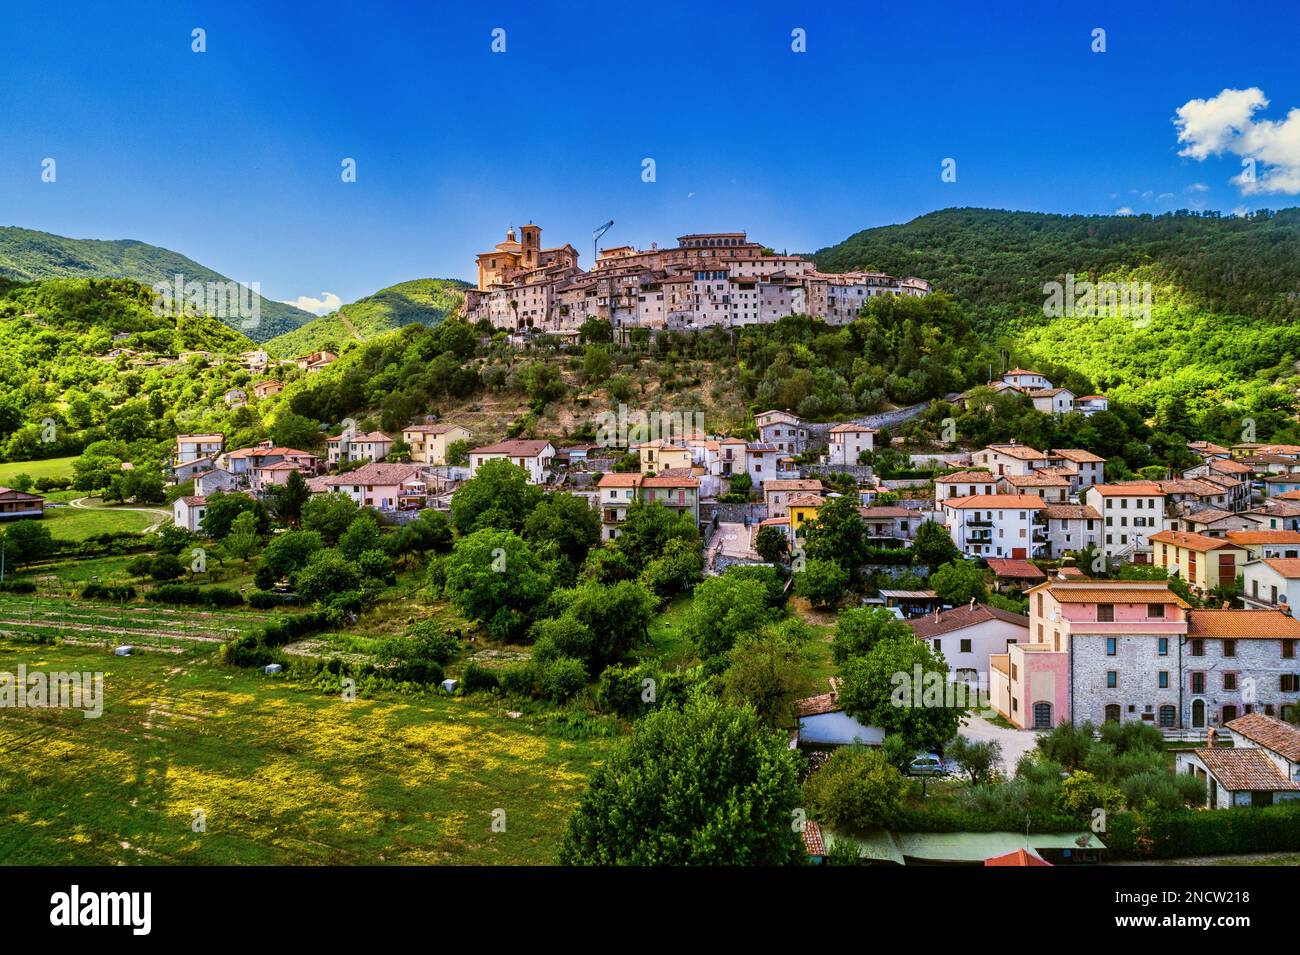 Die historische mittelalterliche Stadt Contigliano hoch oben auf einem Hügel mit Blick auf die Rieti-Ebene. Contigliano, Provinz Rieti, Latium, Italien, Europa Stockfoto